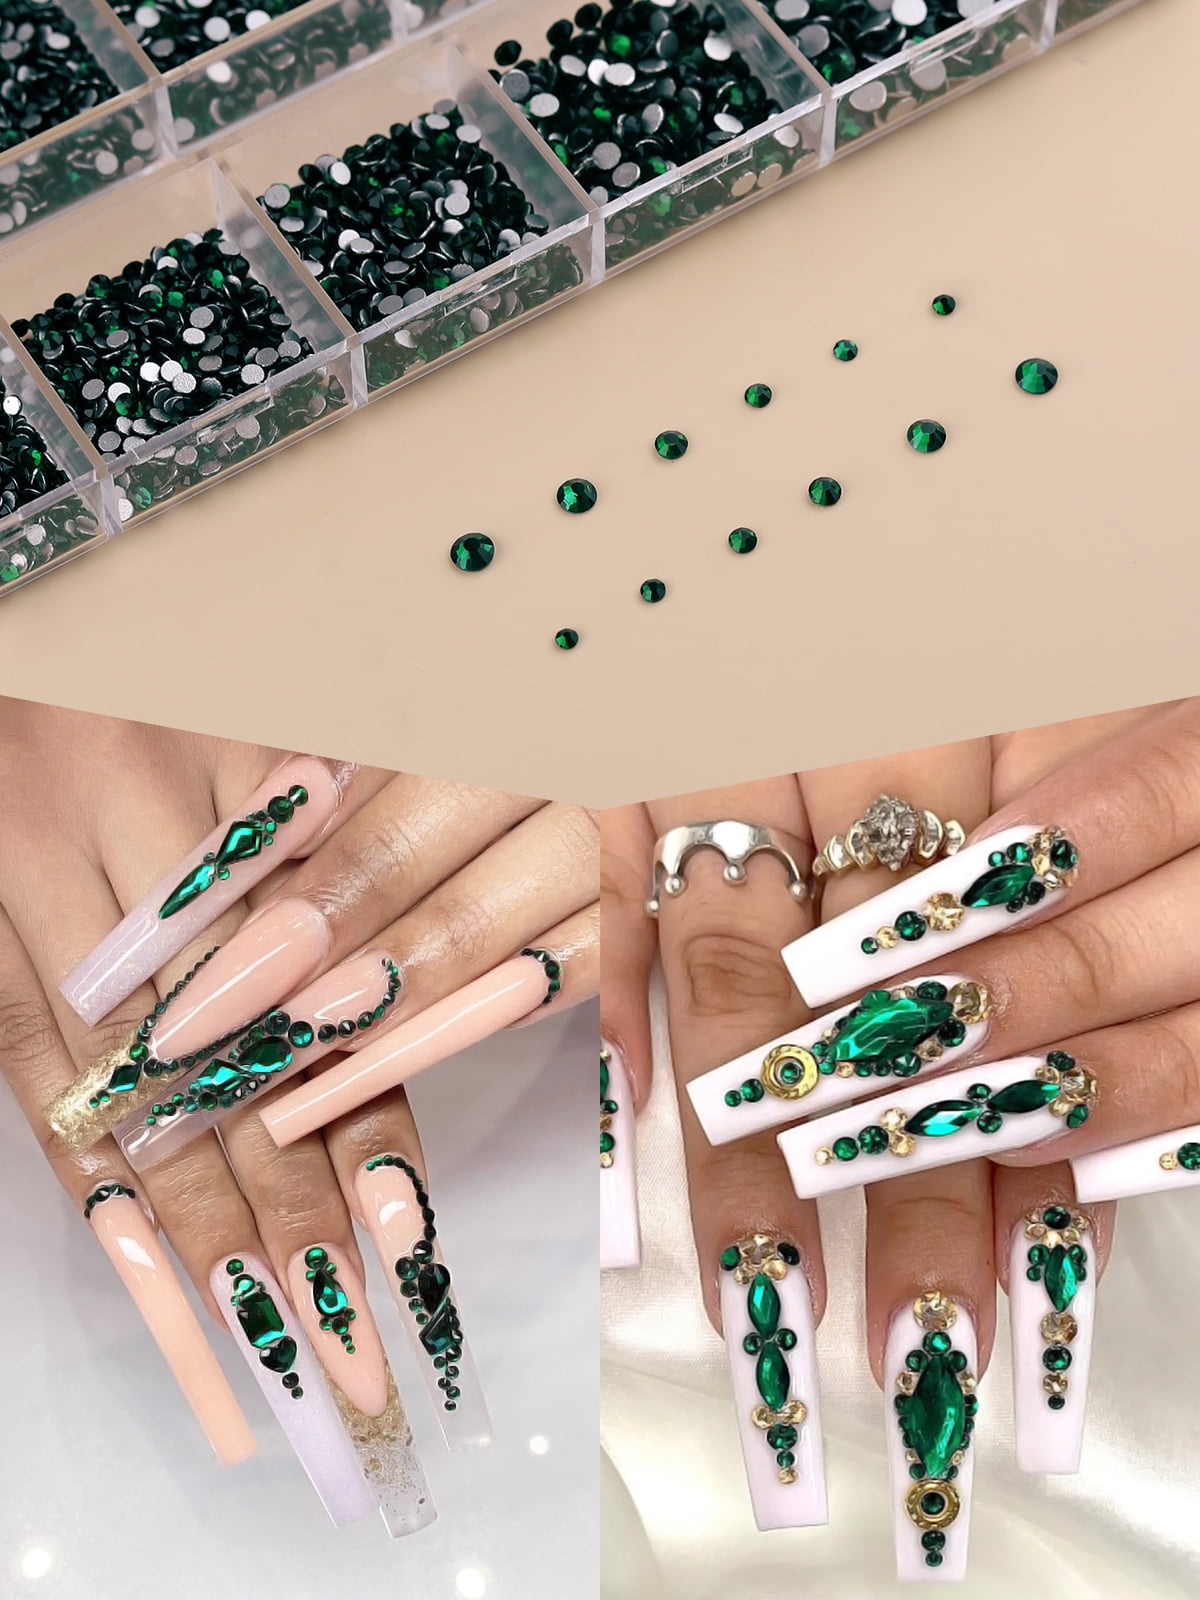 Kalolary 3120Pcs Green Nail Rhinestone Gems Kit Nail Art Crystal